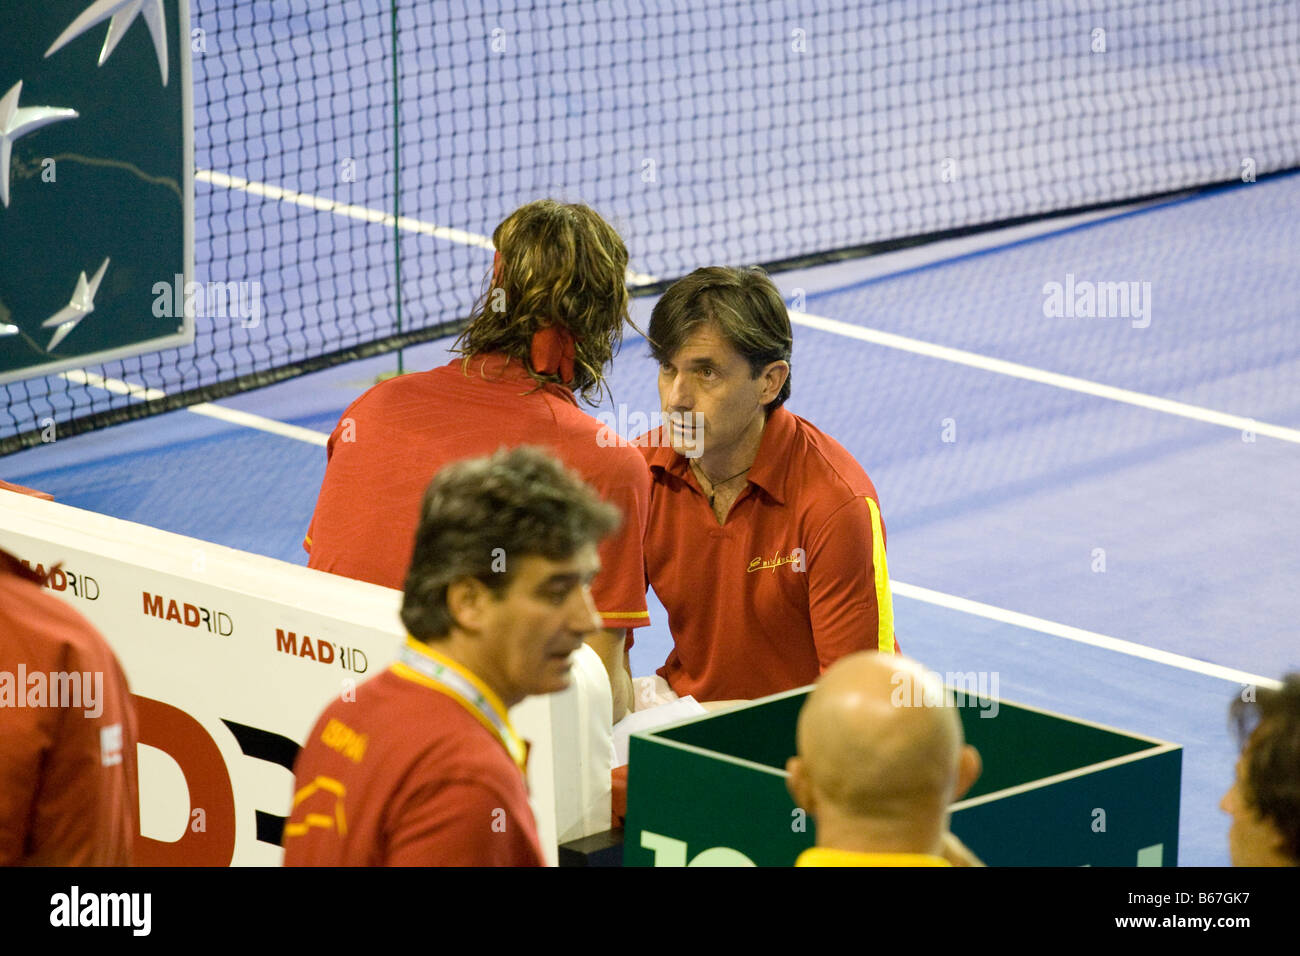 Joueur de tennis espagnol Feliciano Lopez reçoit des directives du capitaine de l'équipe Espagnol Emilio Sanchez Vicario au cours de la 2008 Banque D'Images